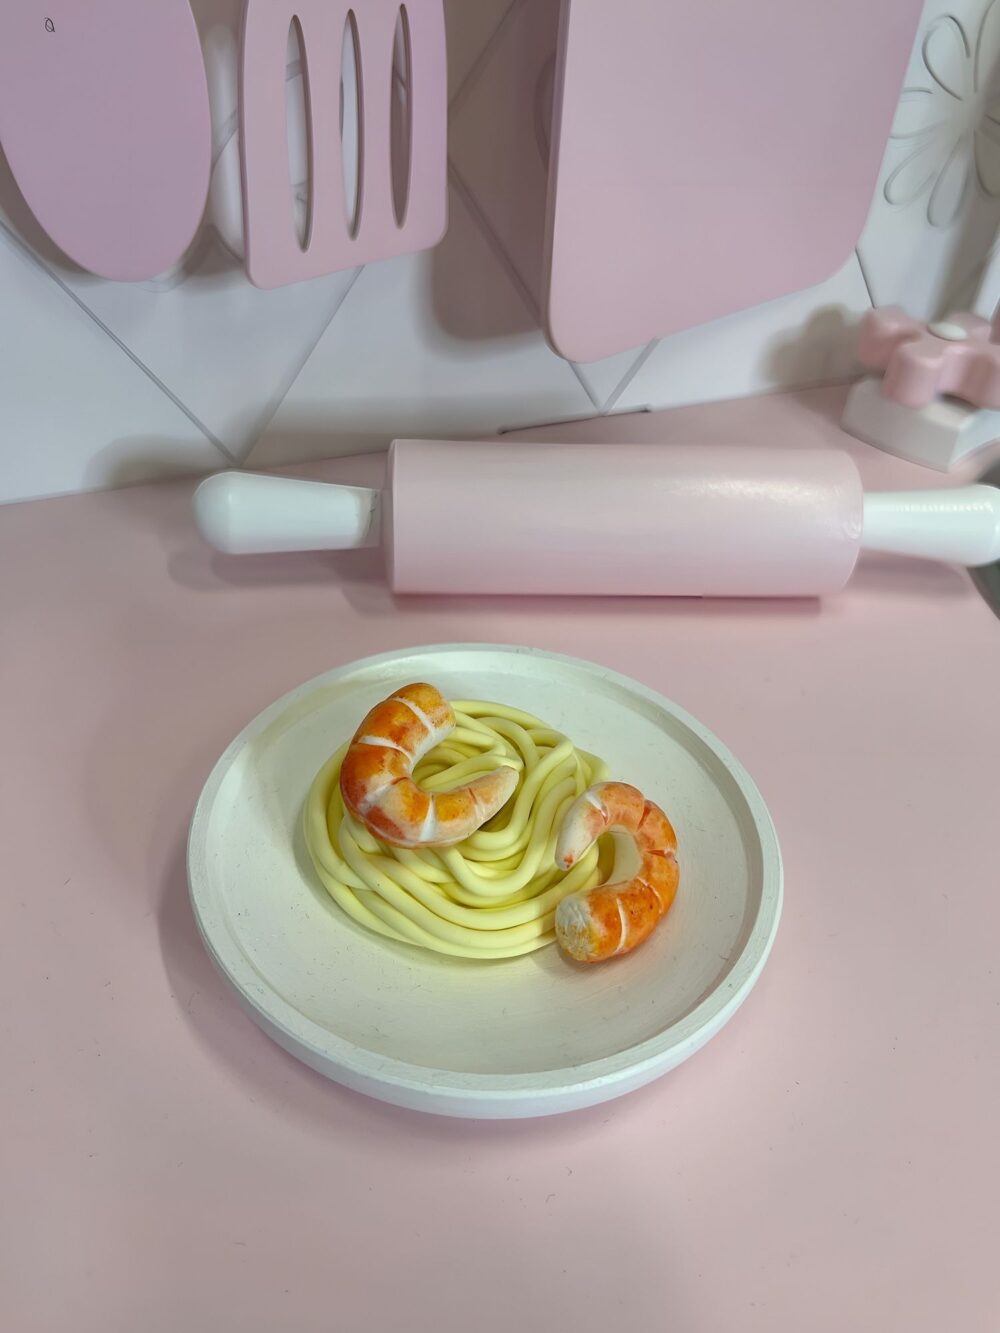 На тарелке лежит спагетти и 2 креветки из полимерной глины